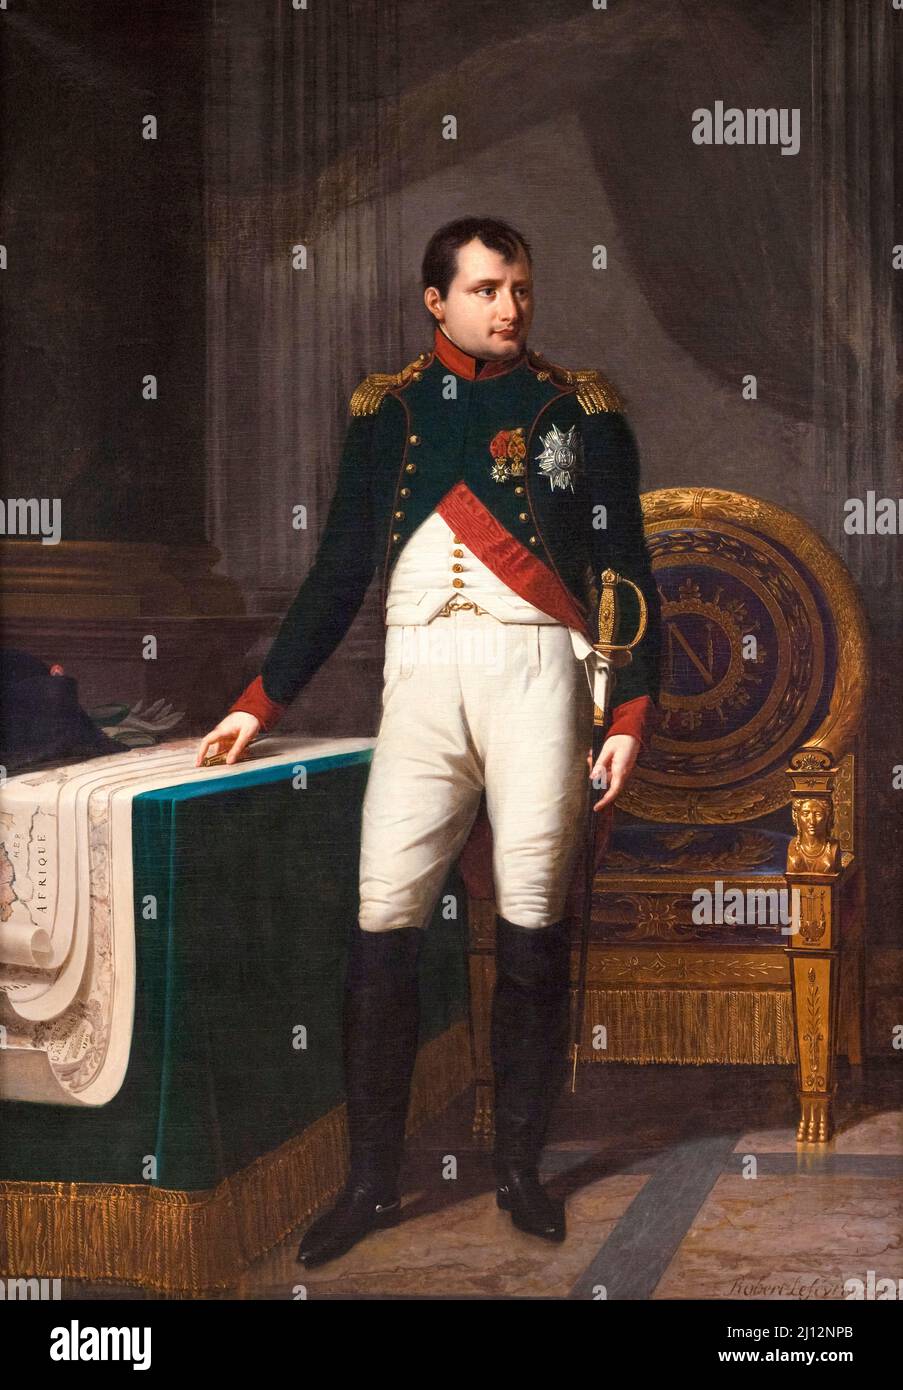 Portrait of Napoleon I (1769-1821) in the uniform of a Colonel of the Chasseurs de la Garde, oil on canvas portrait painting by Robert Jacques François Lefèvre, 1809 Stock Photo